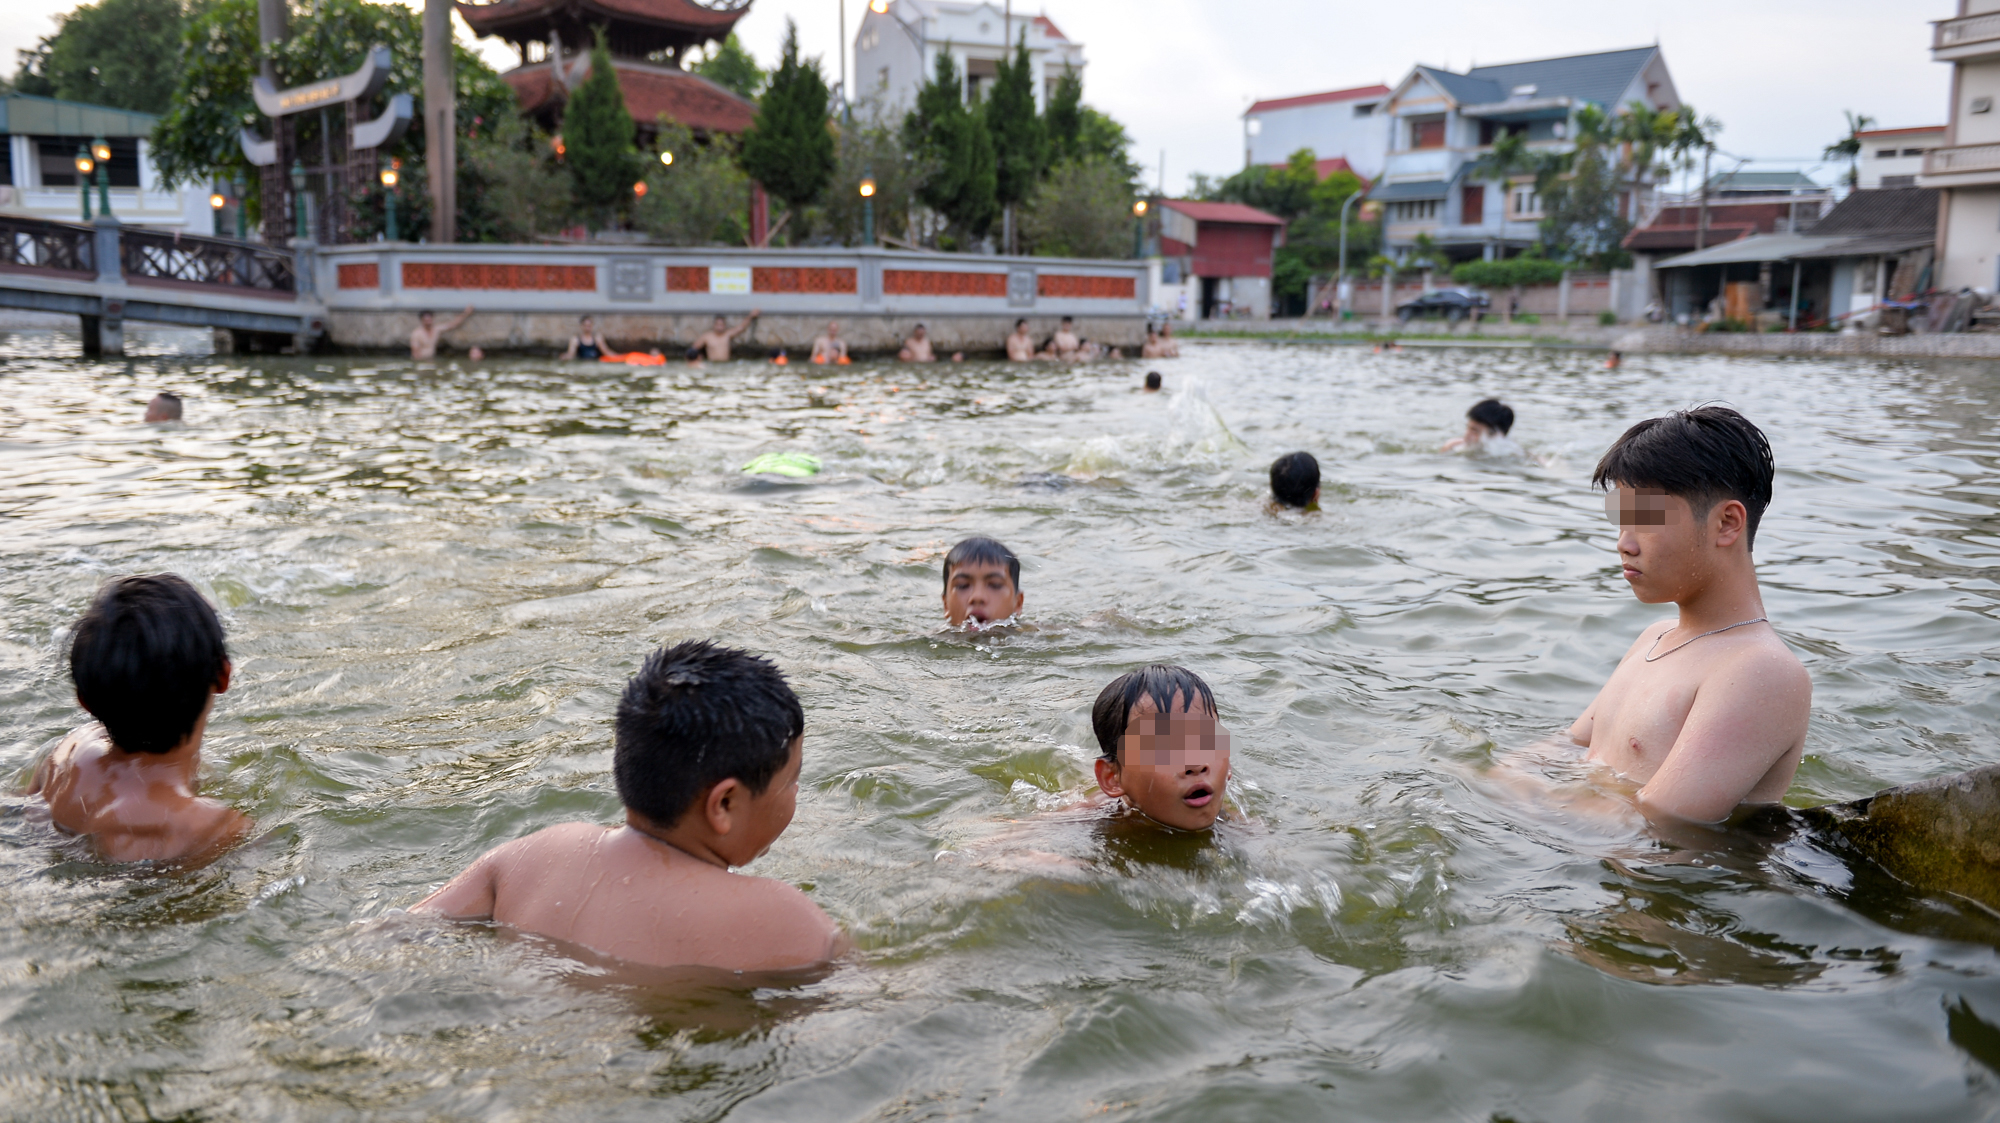  Hà Nội: Ao làng rộng 7.000 m2 được hô biến thành bể bơi, hàng trăm người nô nức tới chơi - Ảnh 3.